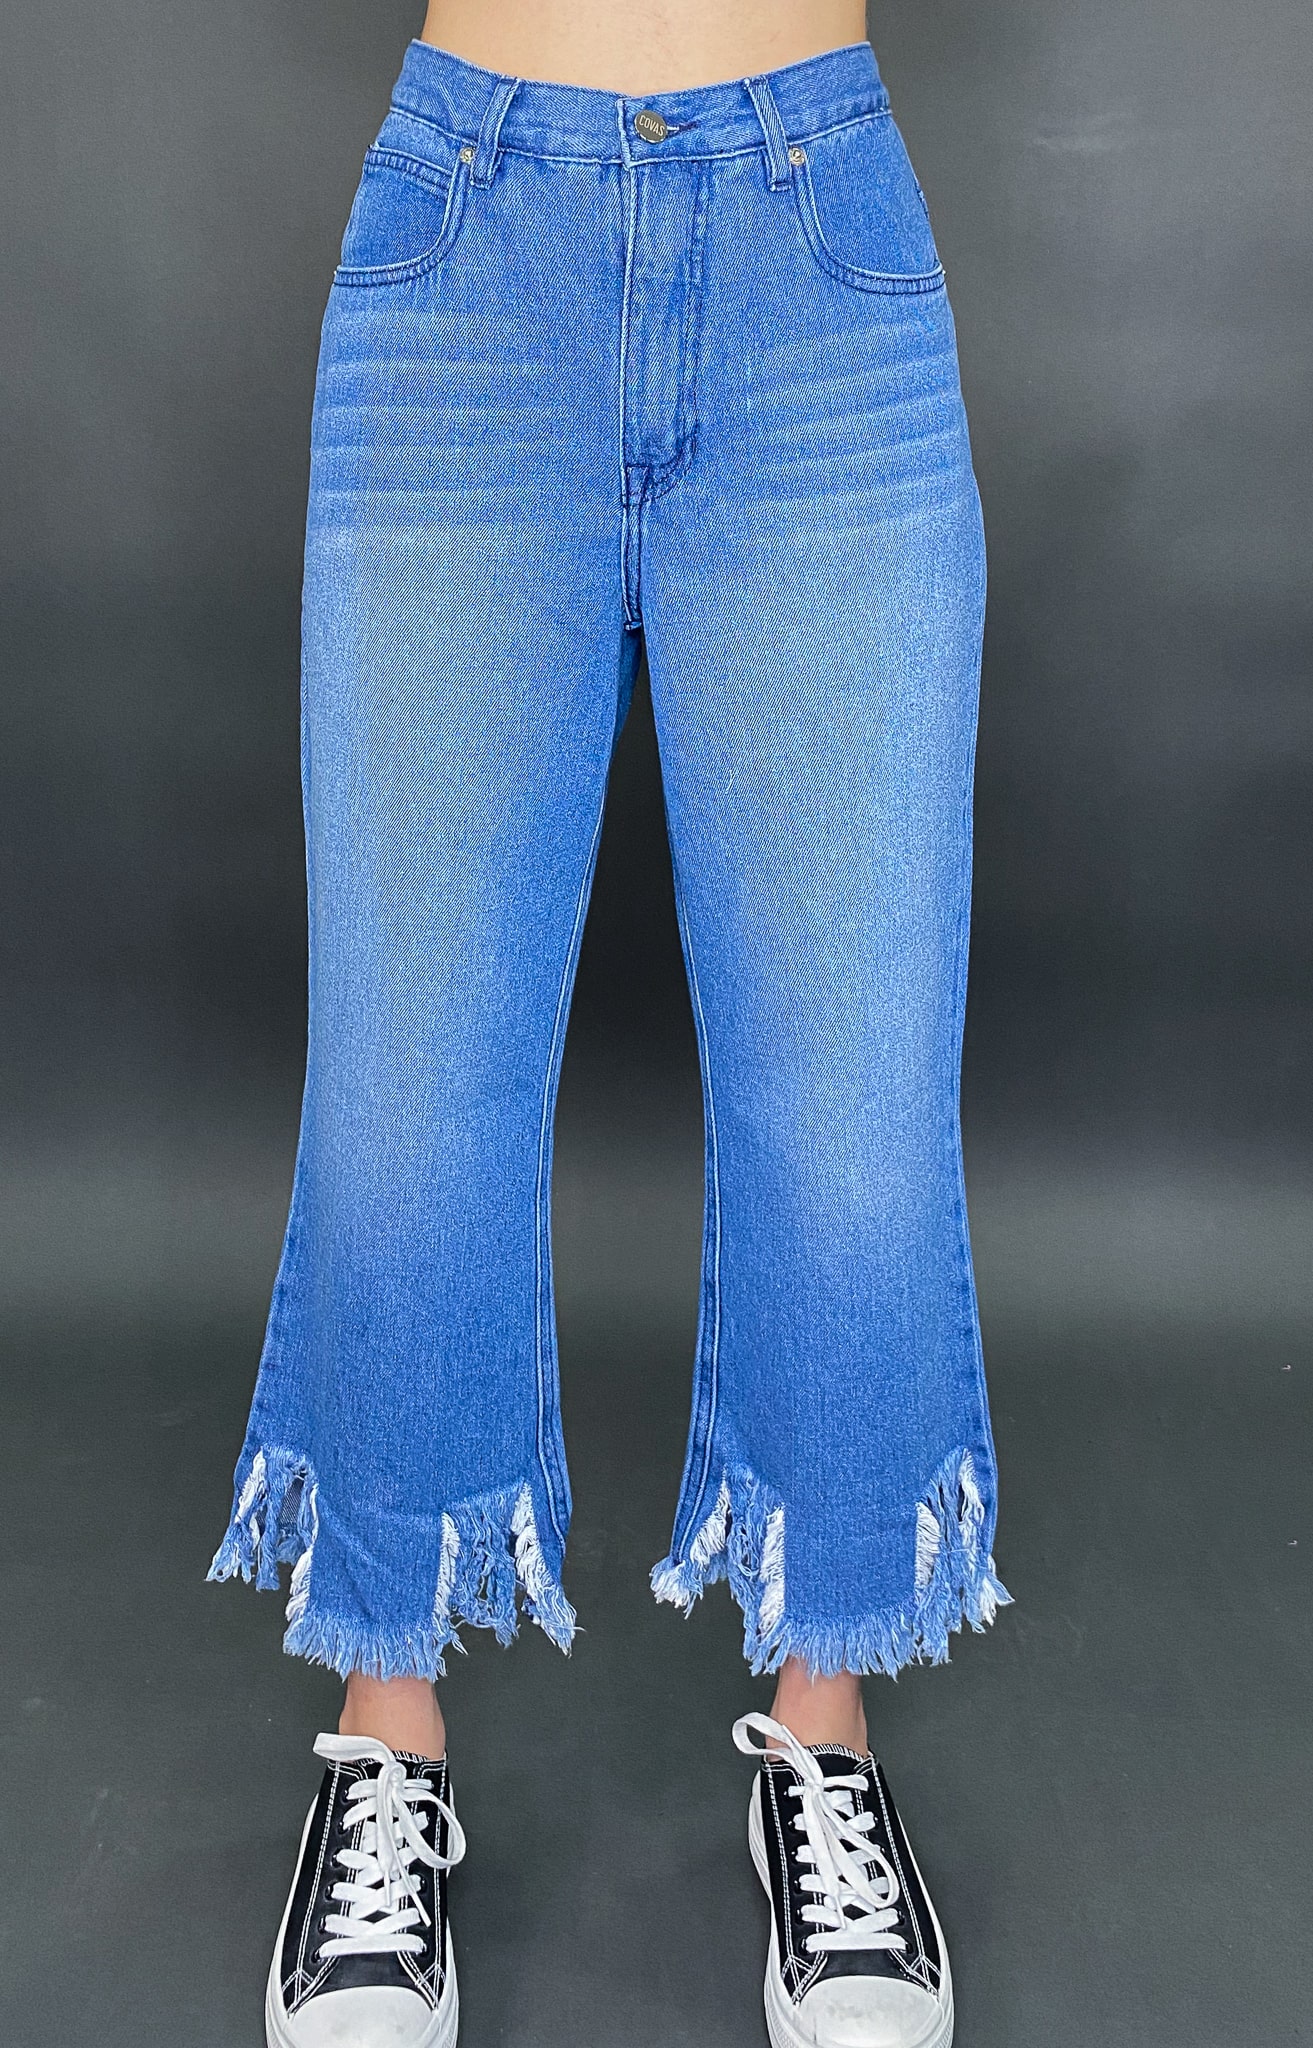 Jeans Capri Deshilachado en el Ruedo Azul Curvy – COVAS 🌿 – Clothing / Ropa